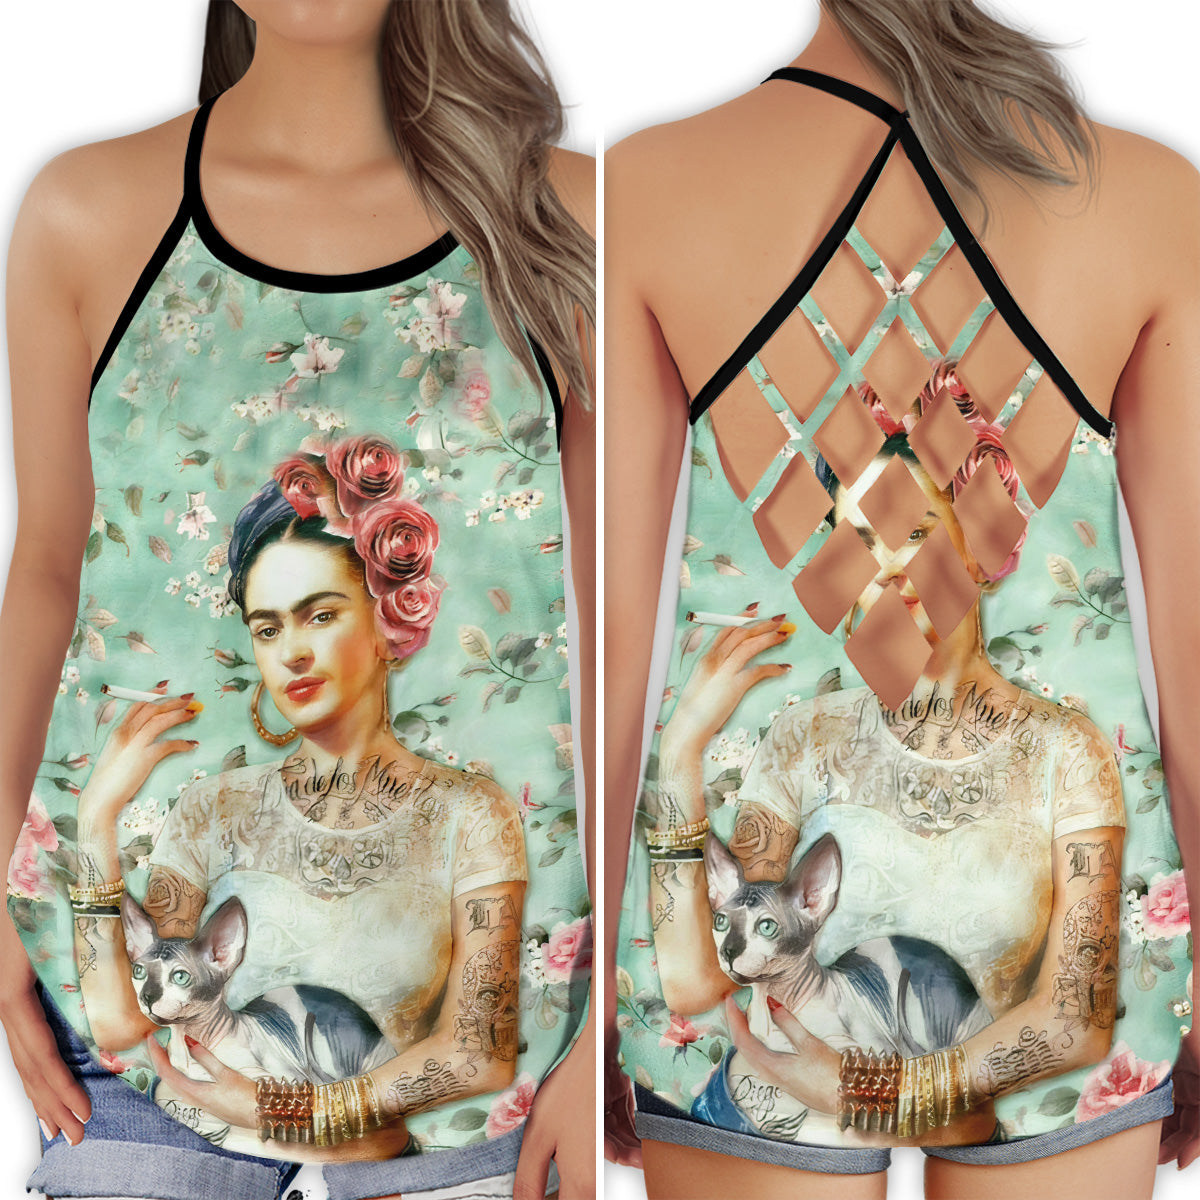 S Frida Kahlo Floral With Dog - Cross Open Back Tank Top - Owls Matrix LTD